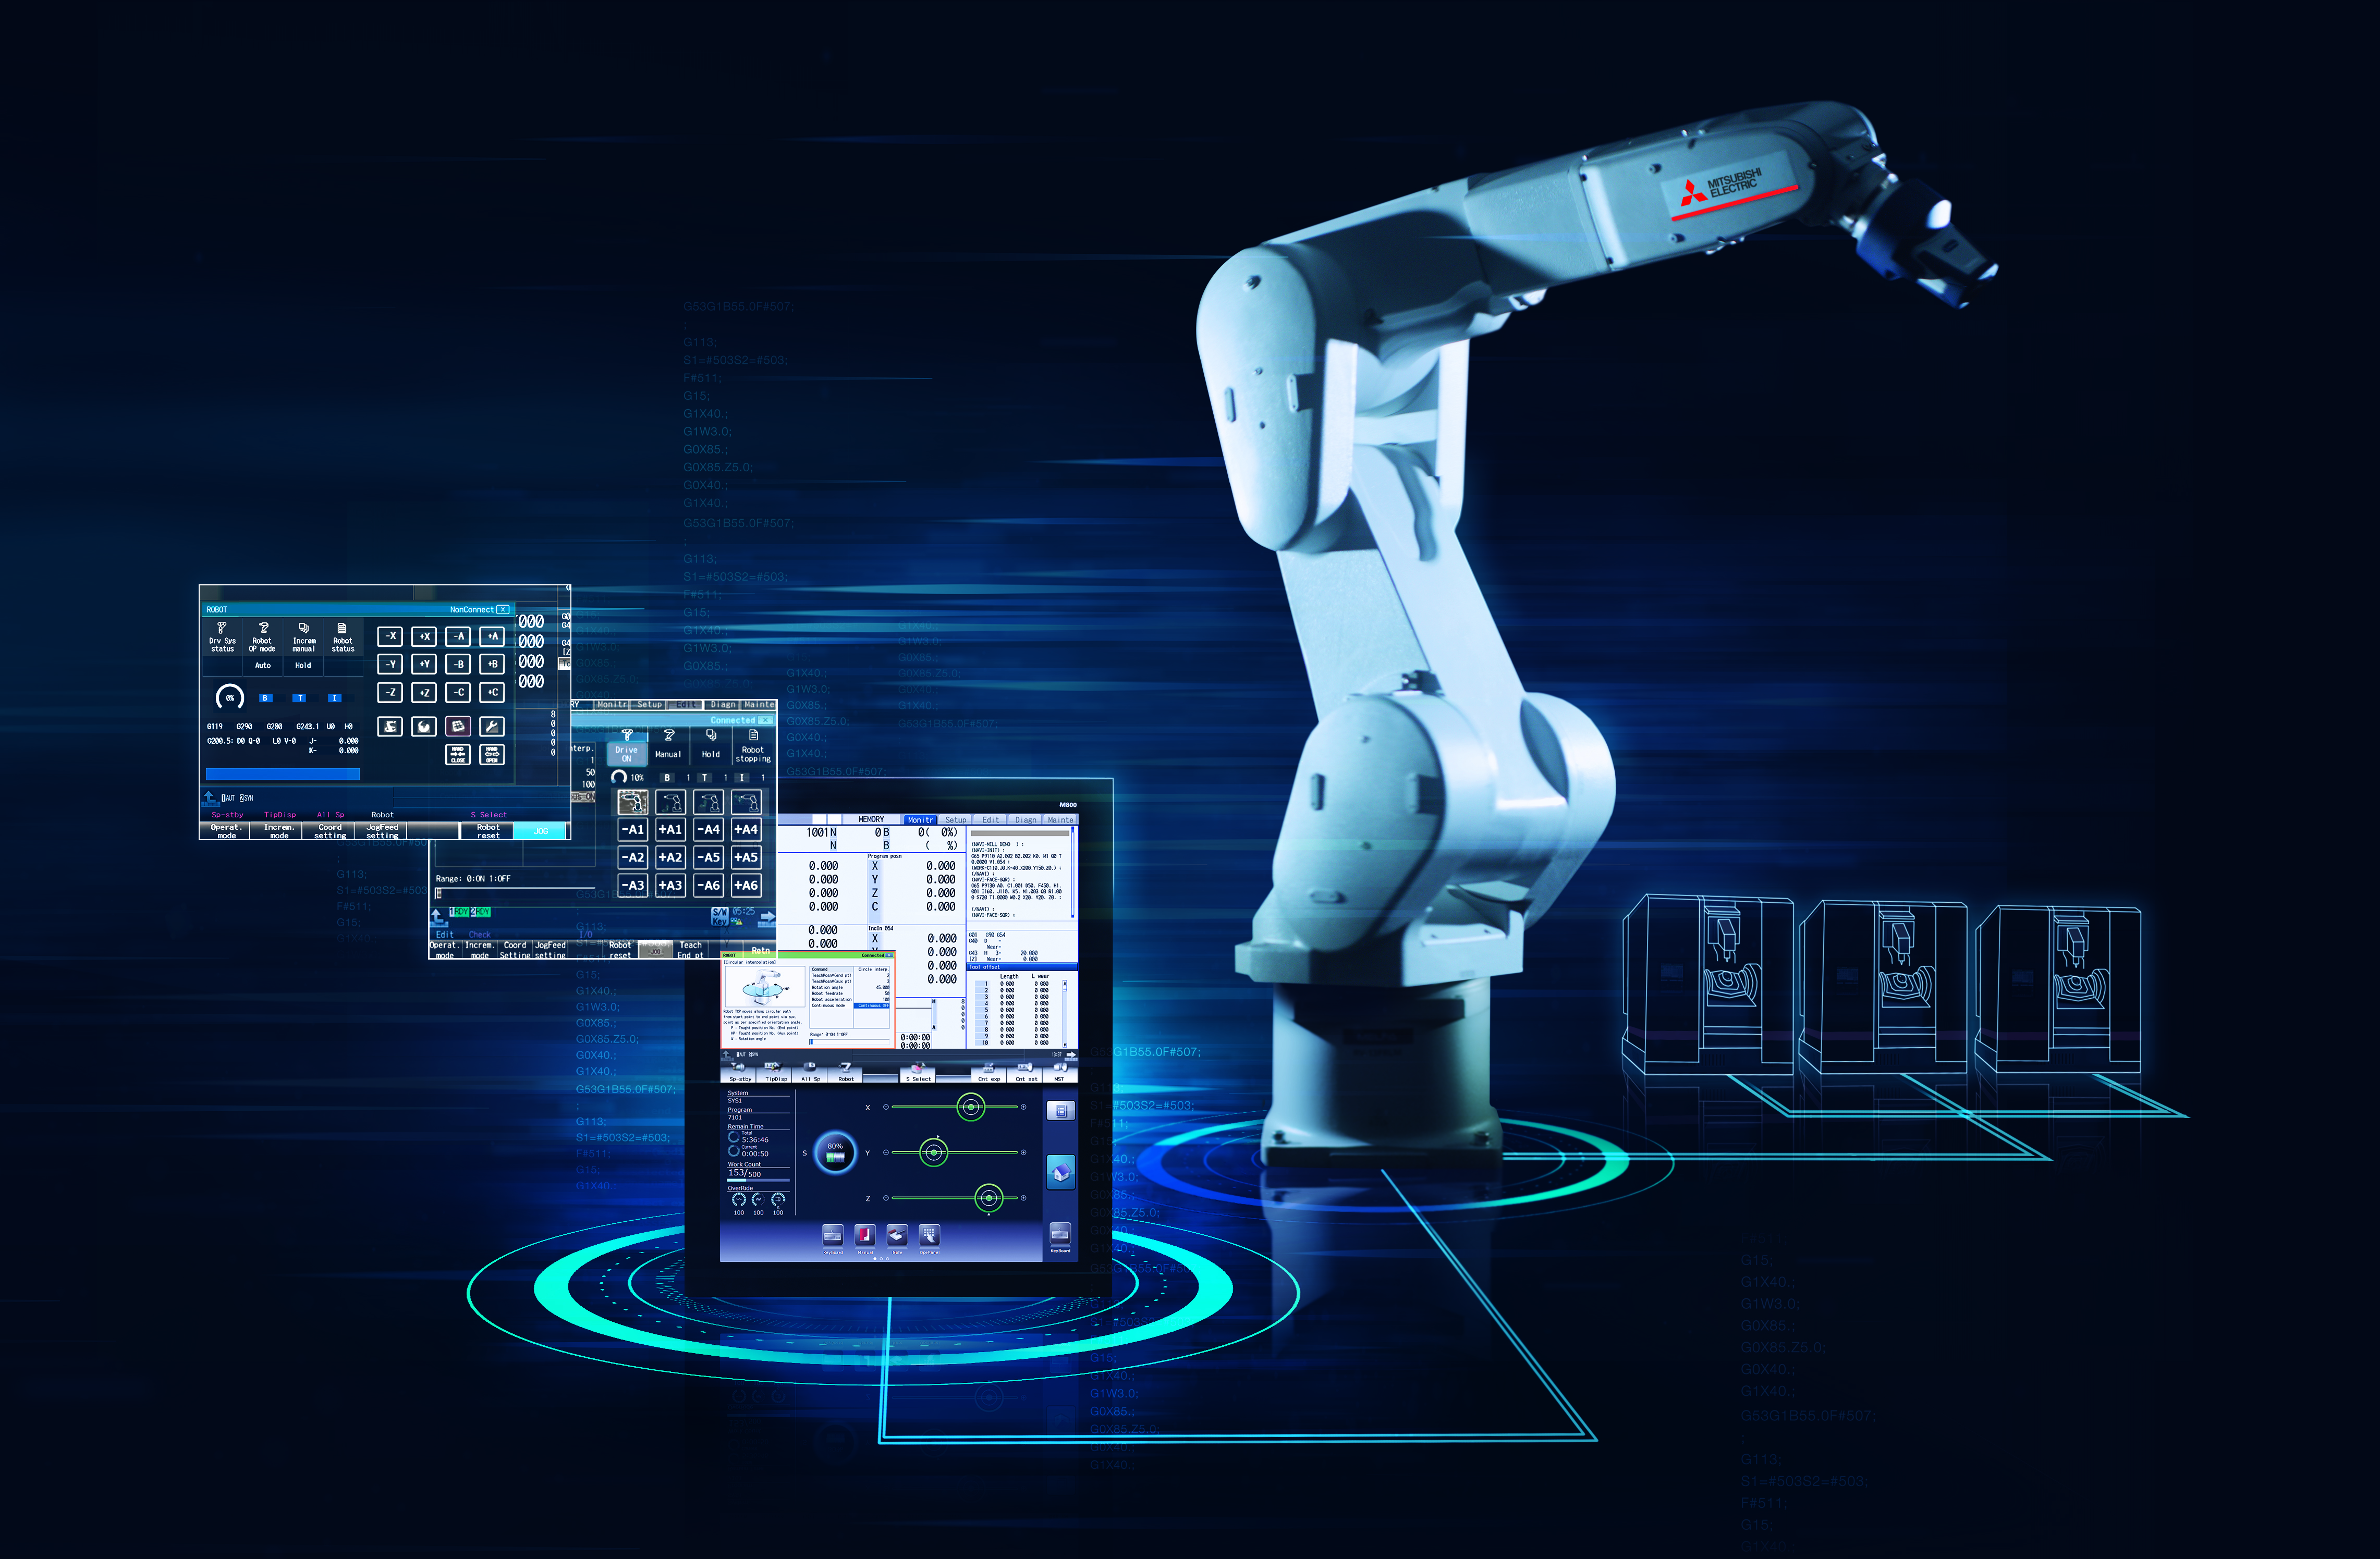 La funzionalità Direct Robot Control (DRC) di Mitsubishi Electric semplifica l'integrazione dei robot nelle applicazioni di lavorazione dei metalli, consentendo agli operatori delle macchine utensili di programmare e utilizzare i robot con grande rapidità